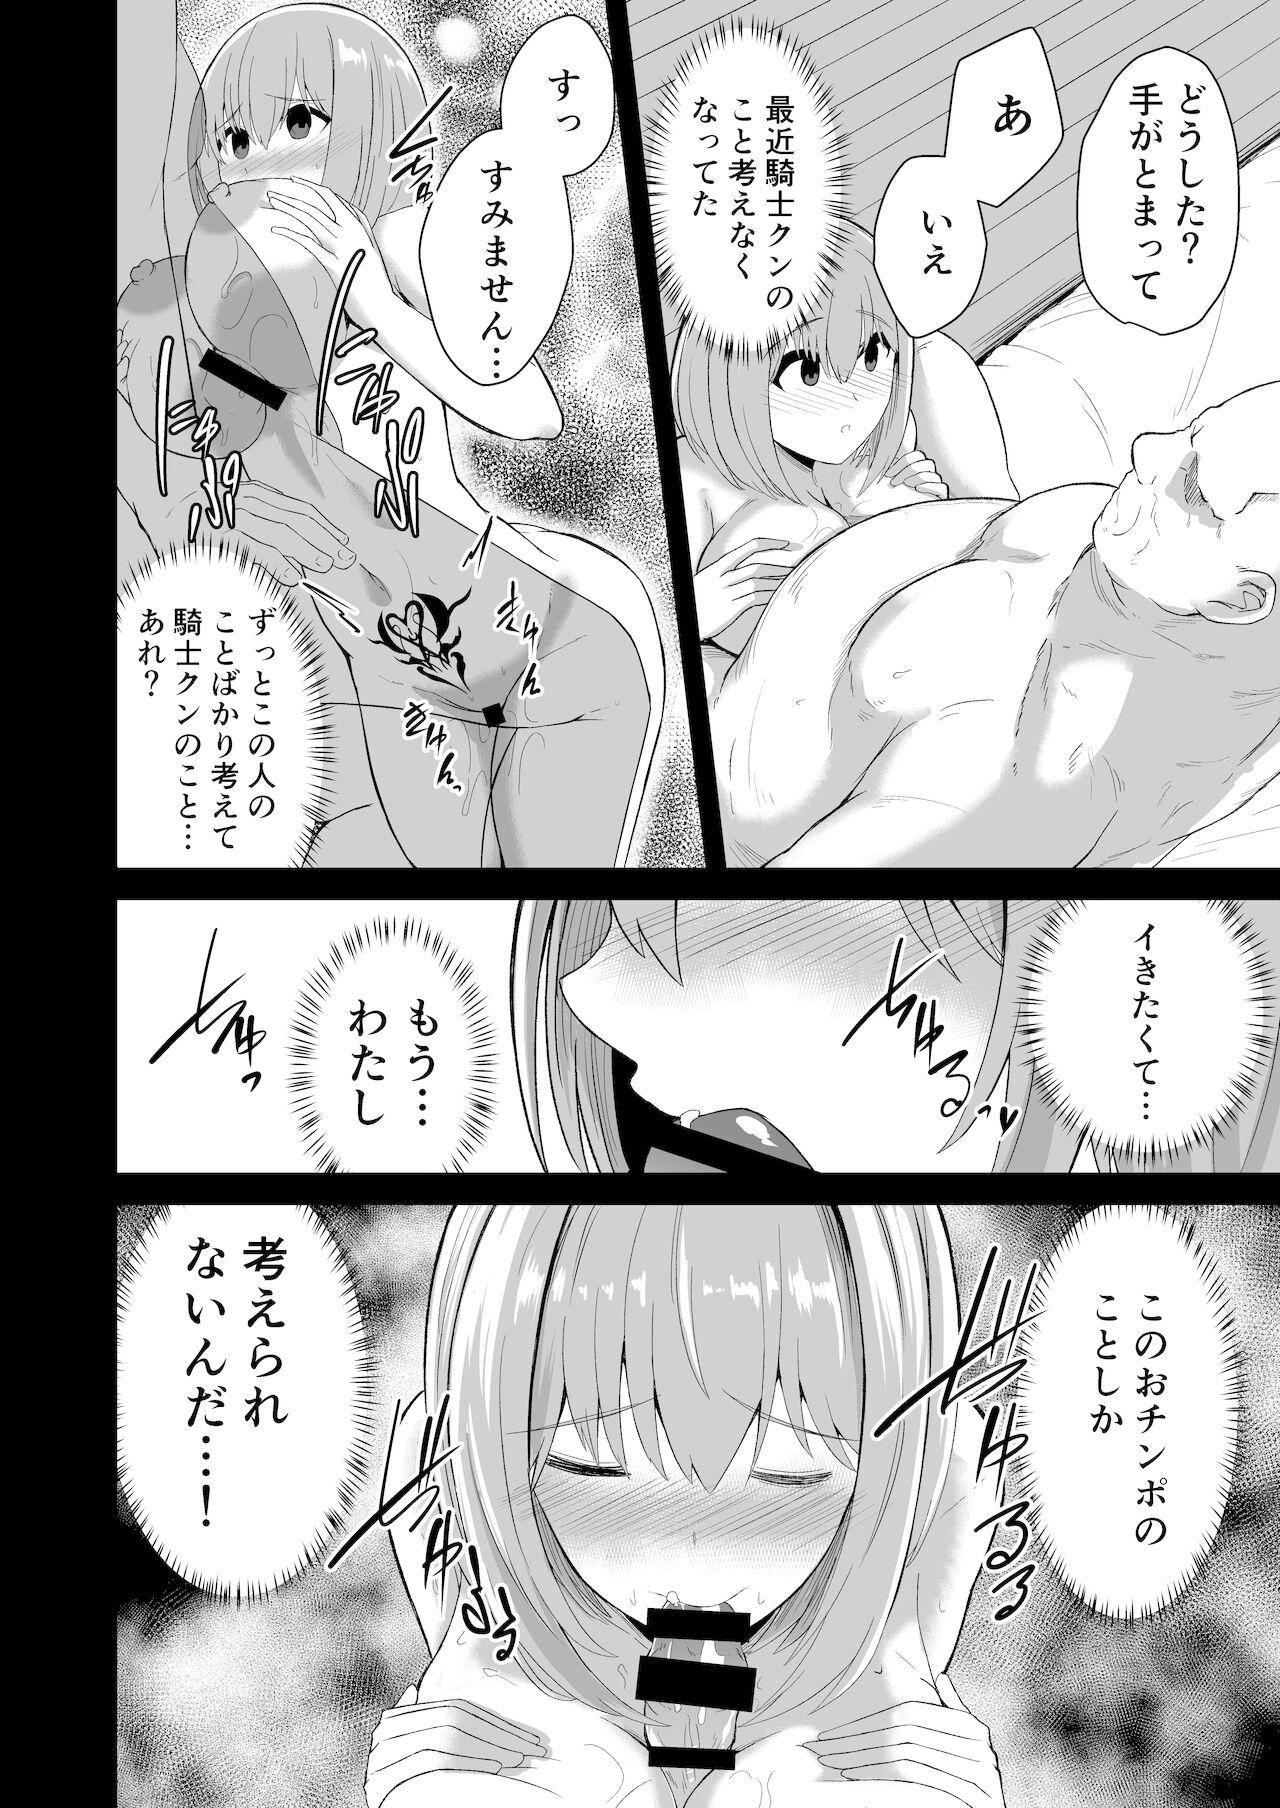 Slutty Ojisan to Yui ga musuba reru sutekina hon - Princess connect Class - Page 12